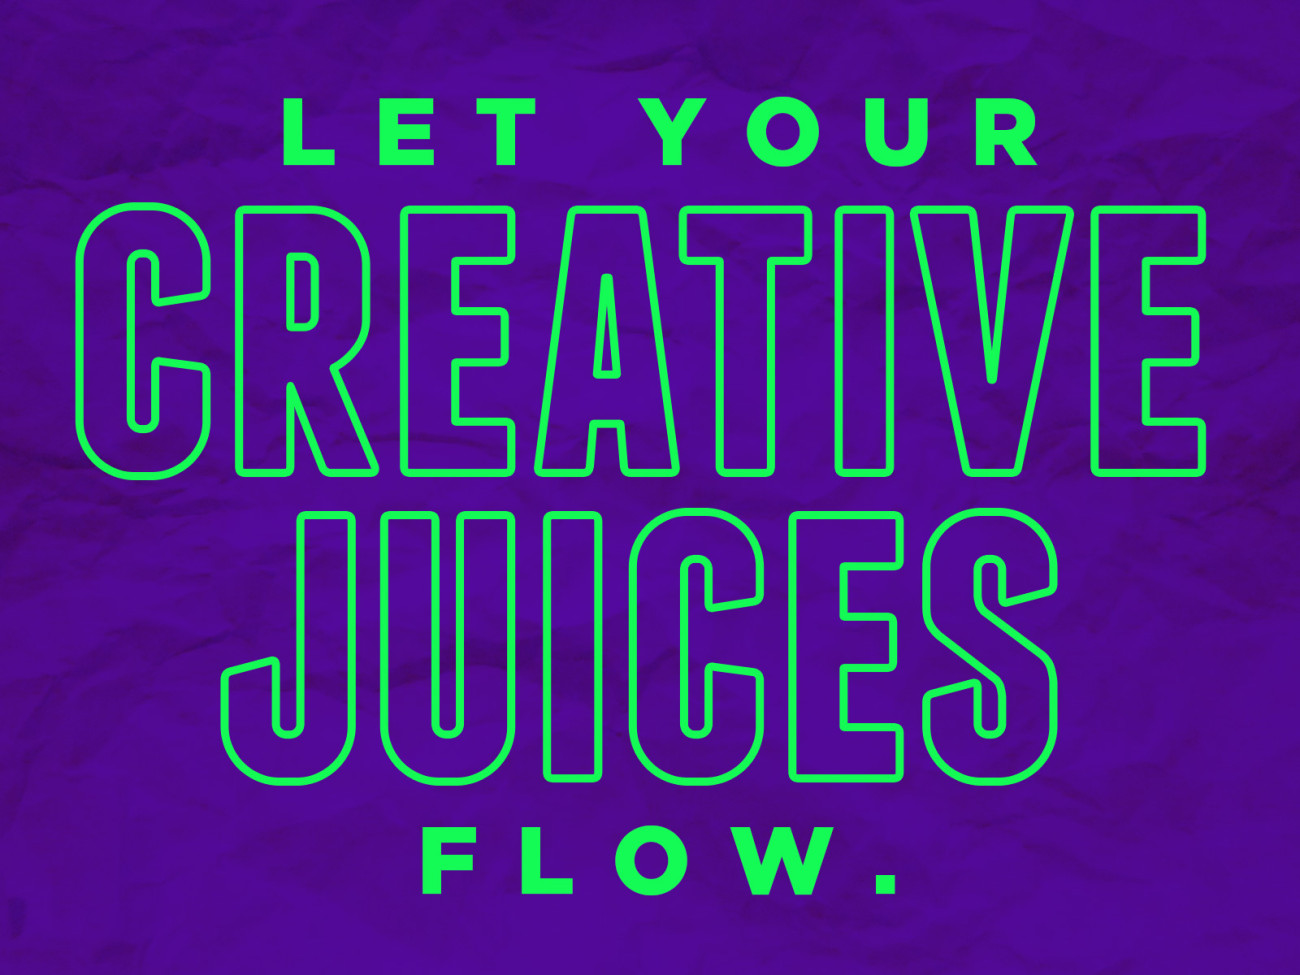 Let Your Creative Juices Flow